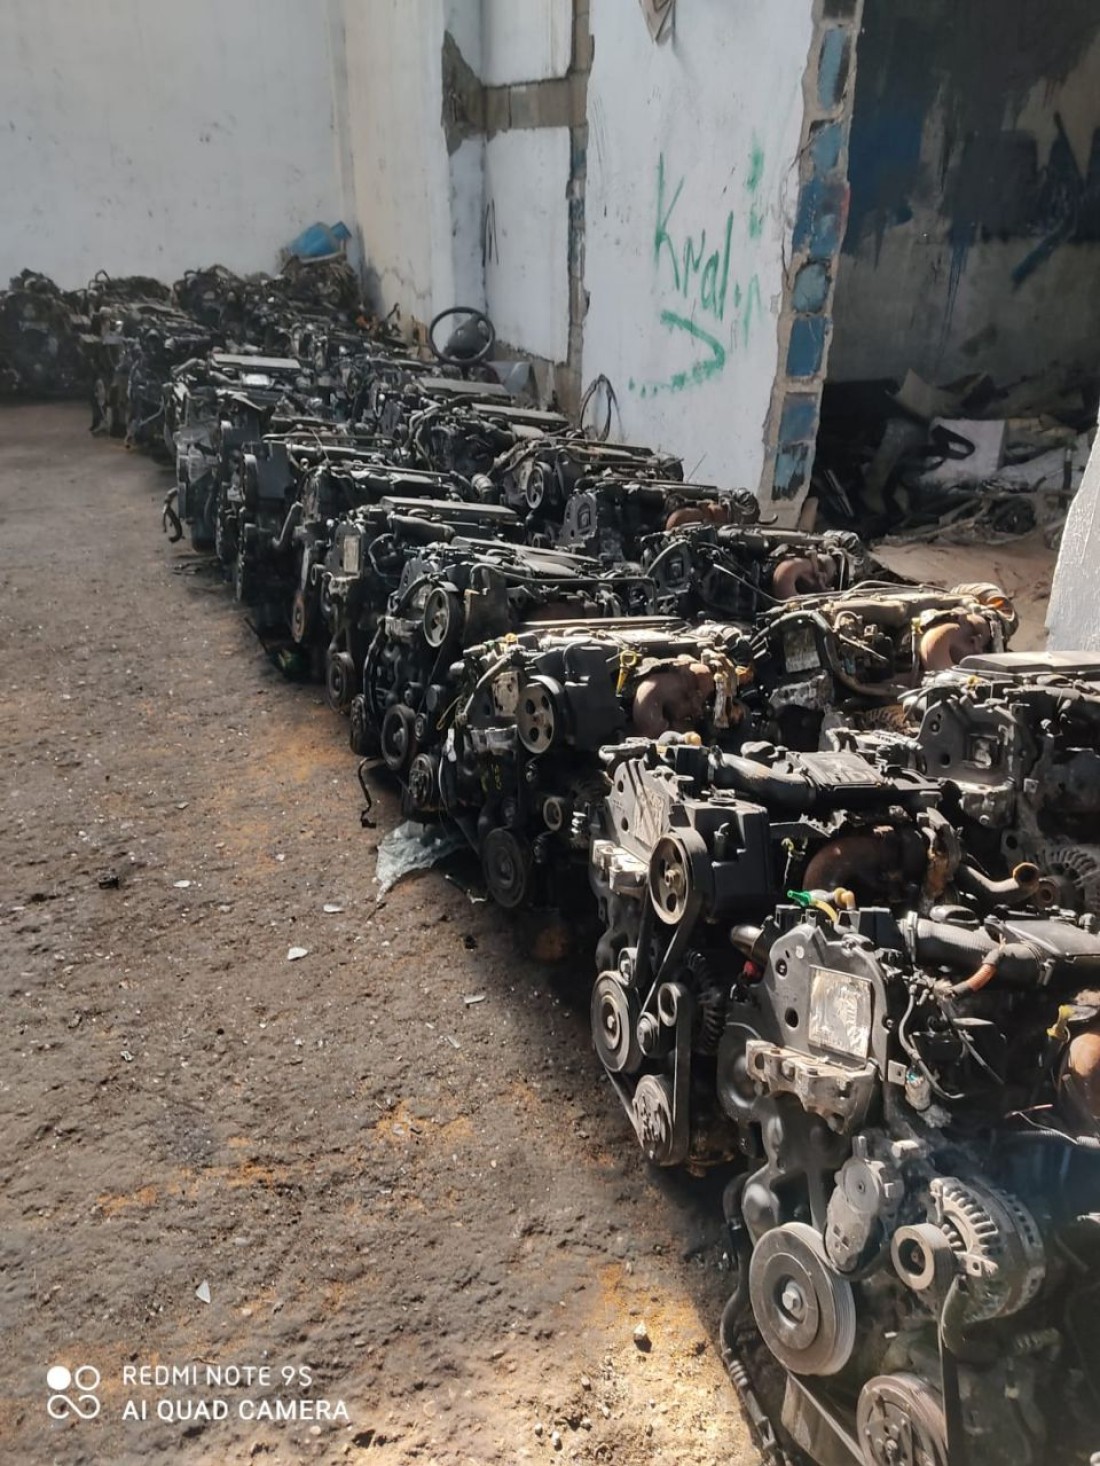 Gaziantep’te çok sayıda otomobil motoru ele geçirildi